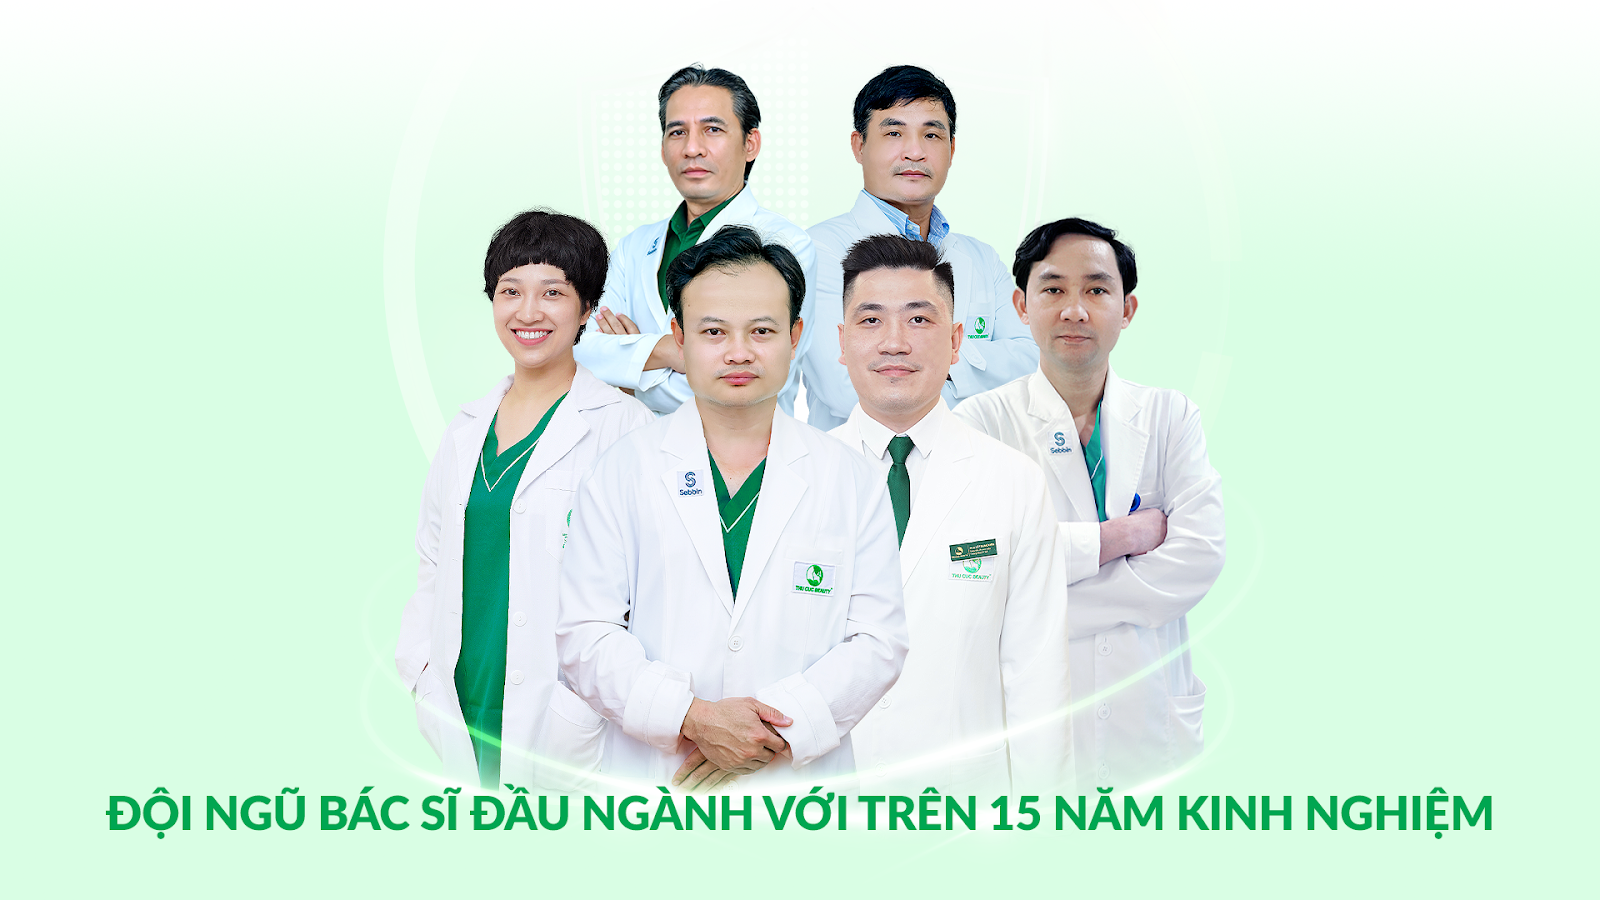 Bệnh viện Thẩm mỹ Thu Cúc: Địa chỉ làm đẹp uy tín hàng đầu Sài Gòn Ảnh 7